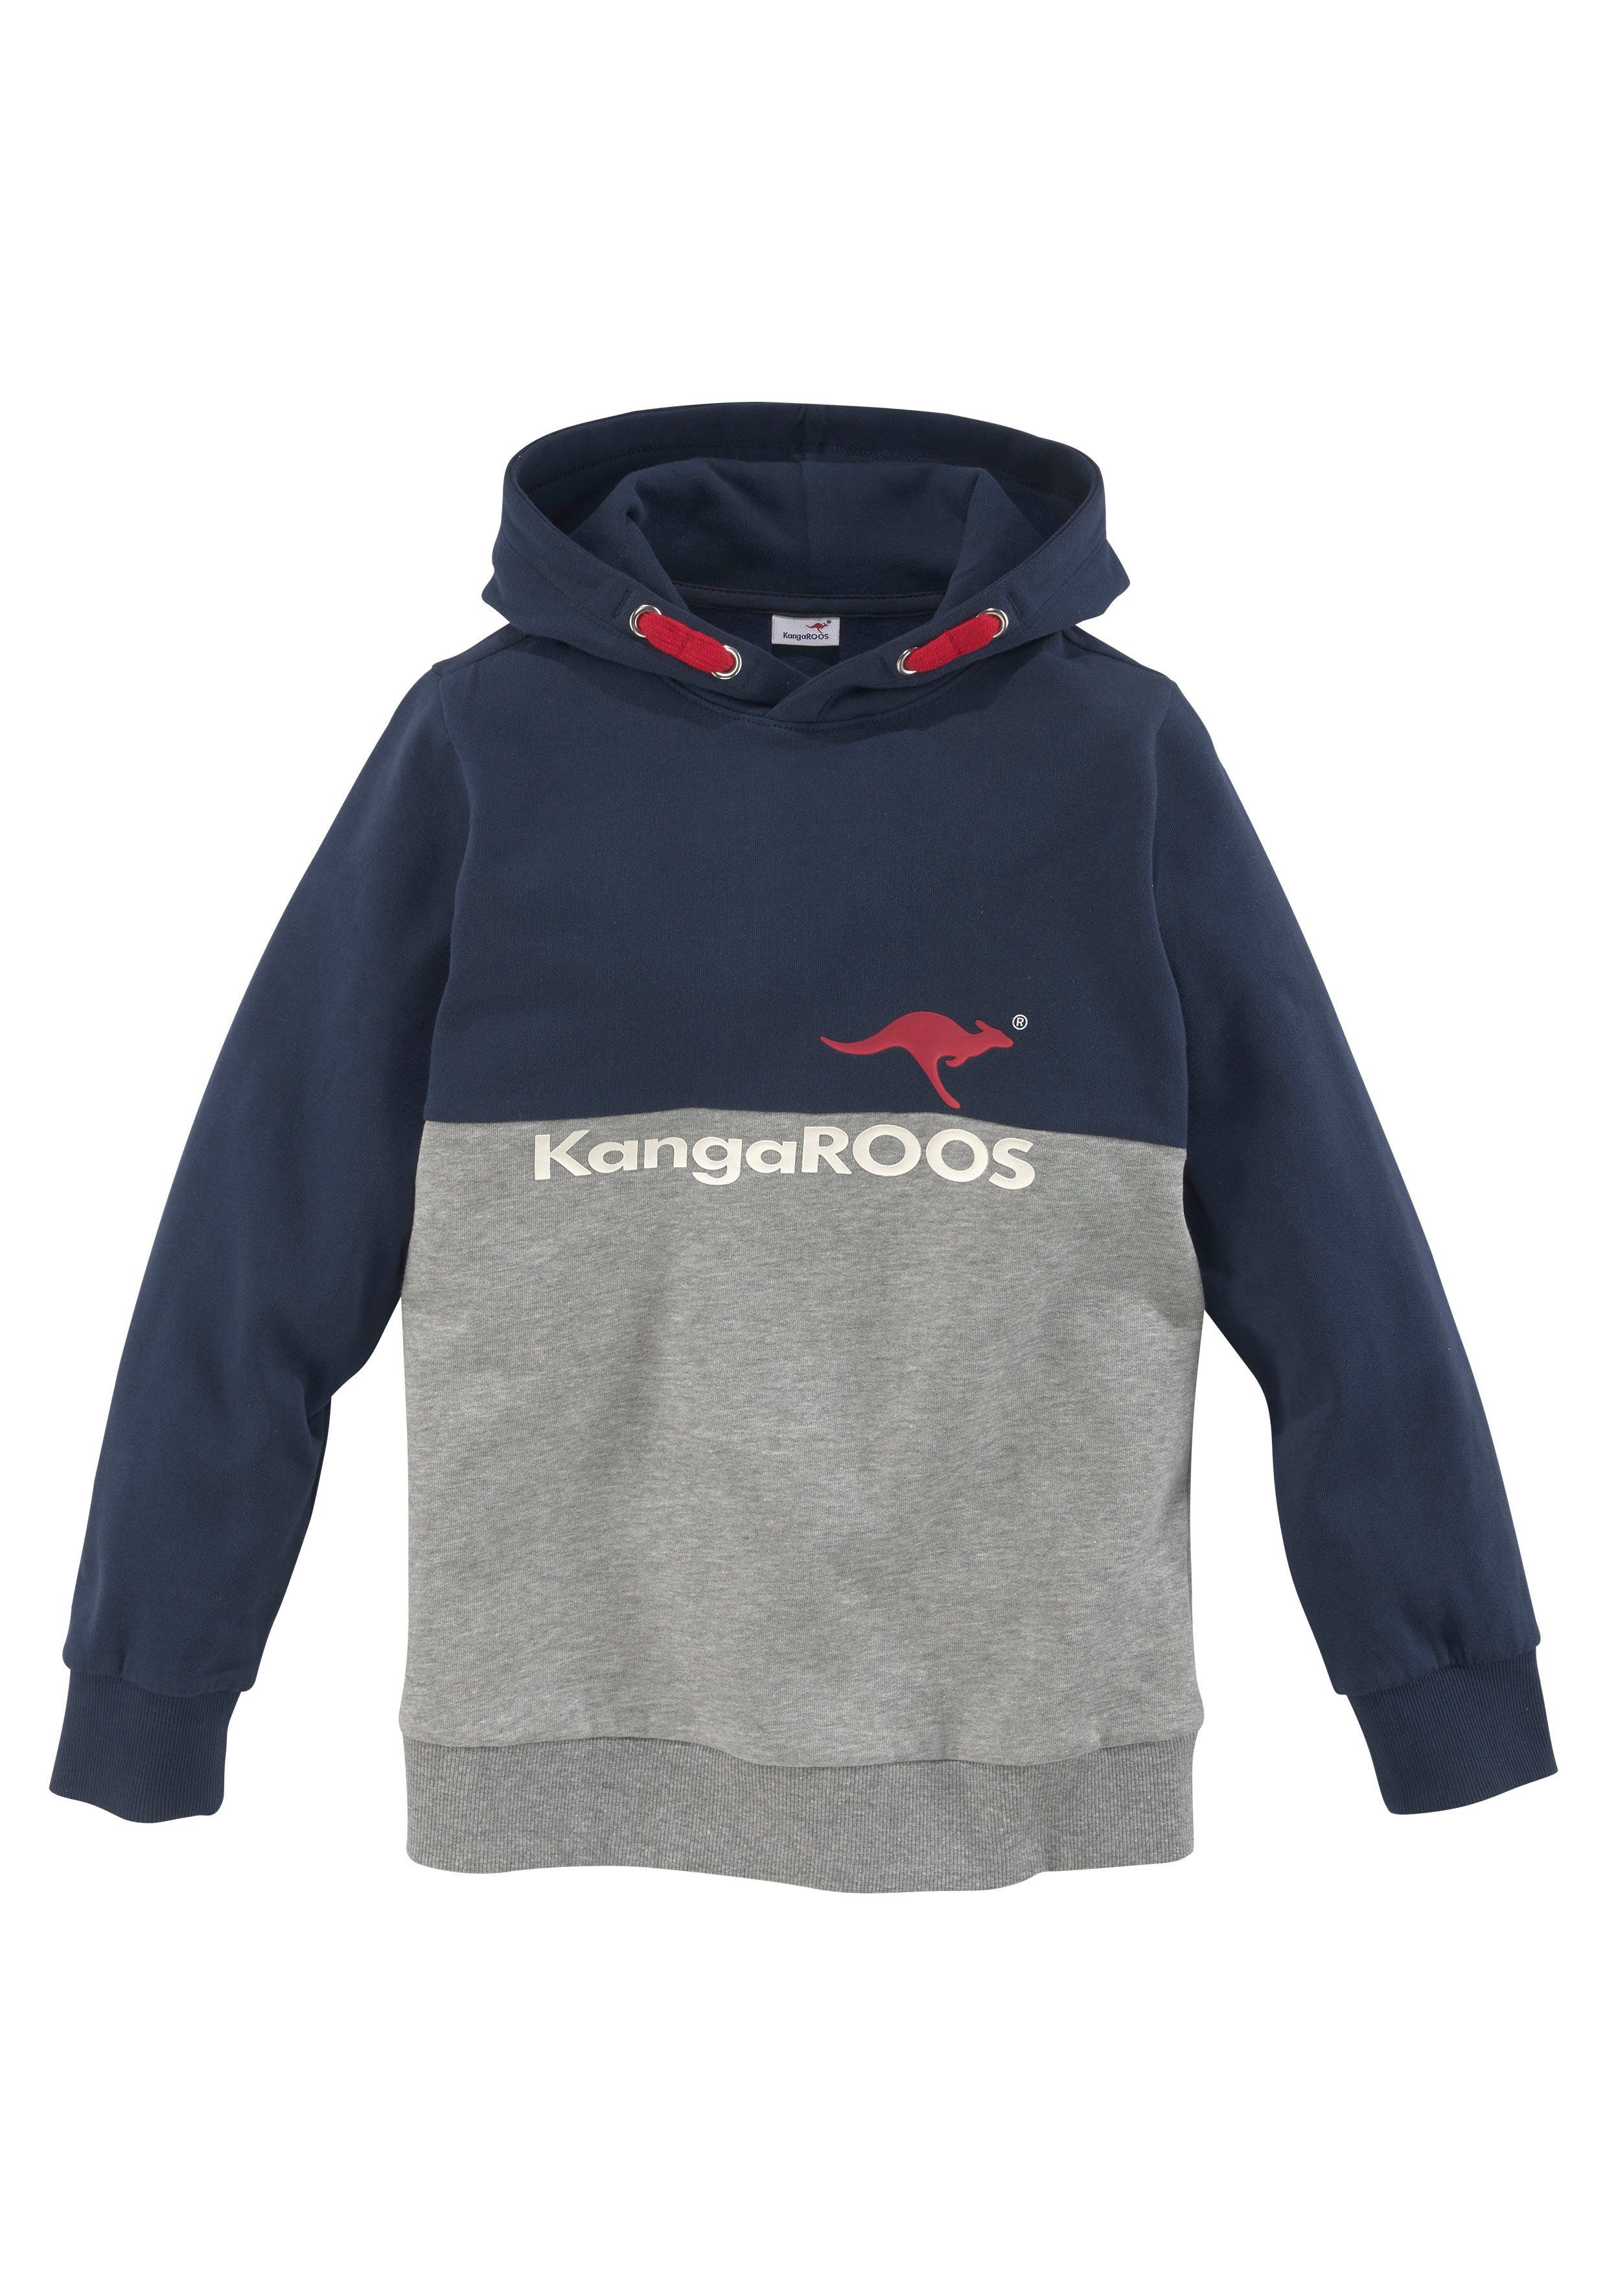 KangaROOS mit Kapuzensweatshirt zweifarbig Logodruck